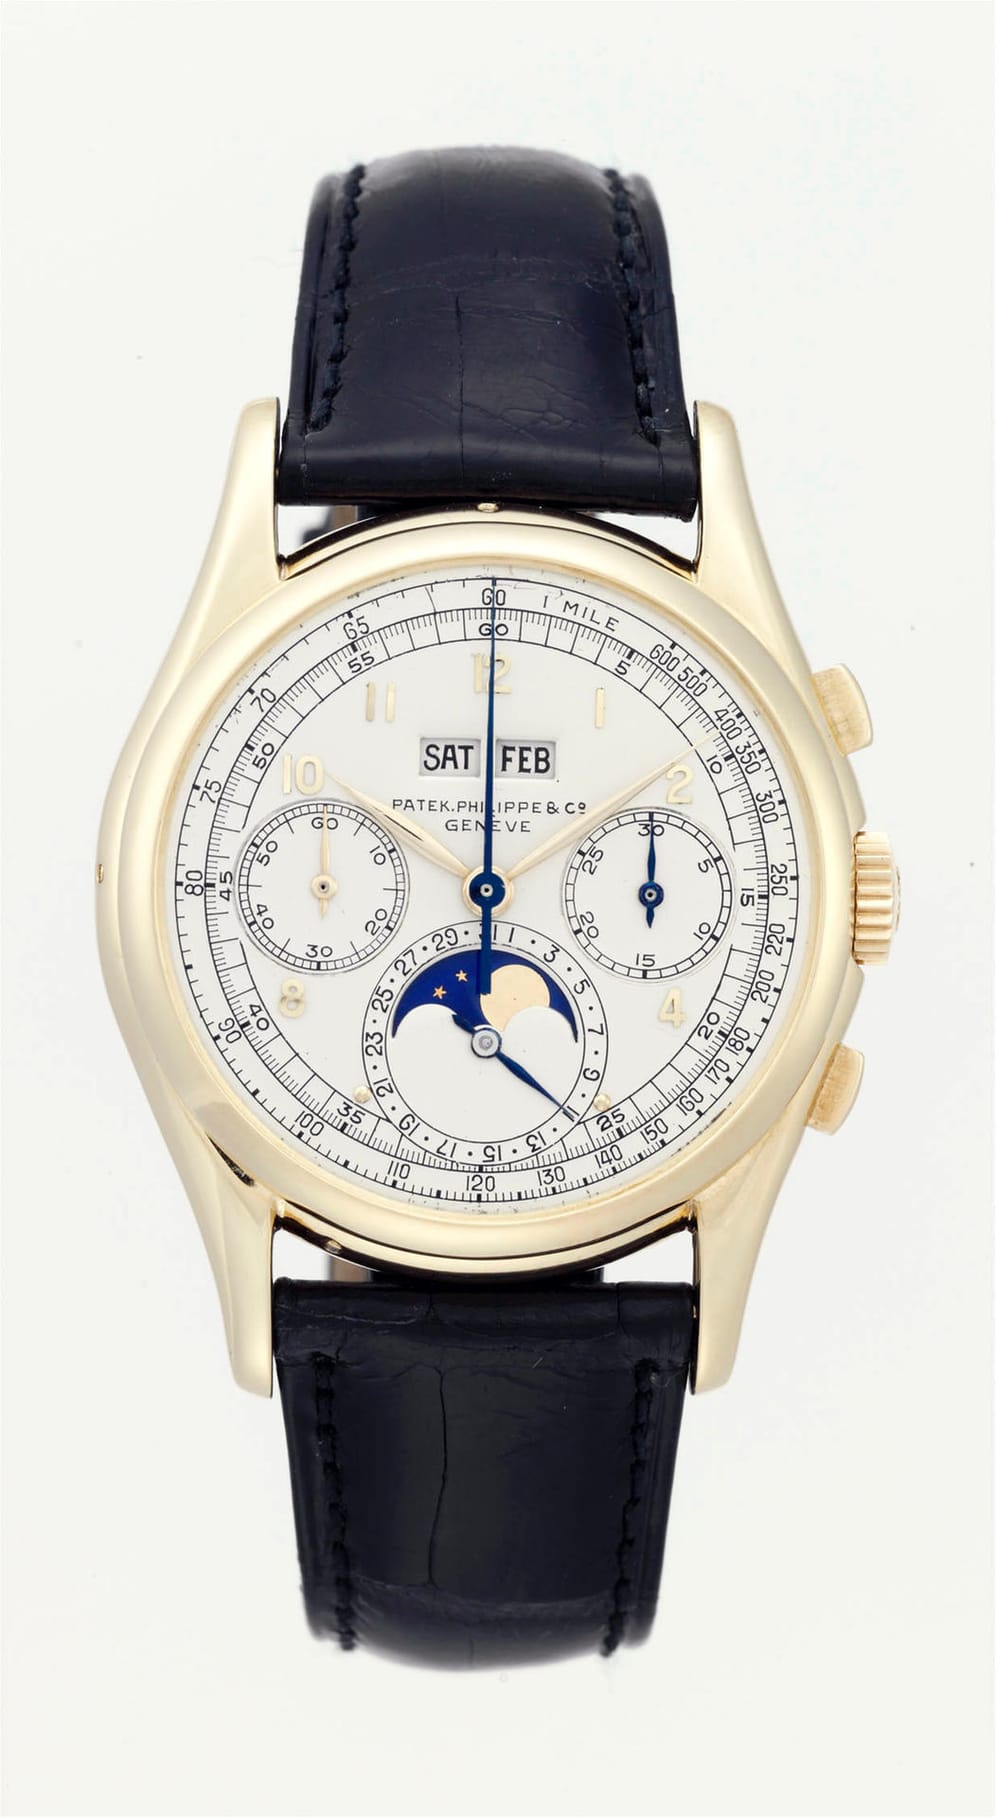 2010 erlöste die Patek Philippe 1943 Watch Ref. 1527 bei einer Versteigerung in Genf einen Preis von rund 5,7 Millionen US-Dollar (5,4 Millionen Euro).